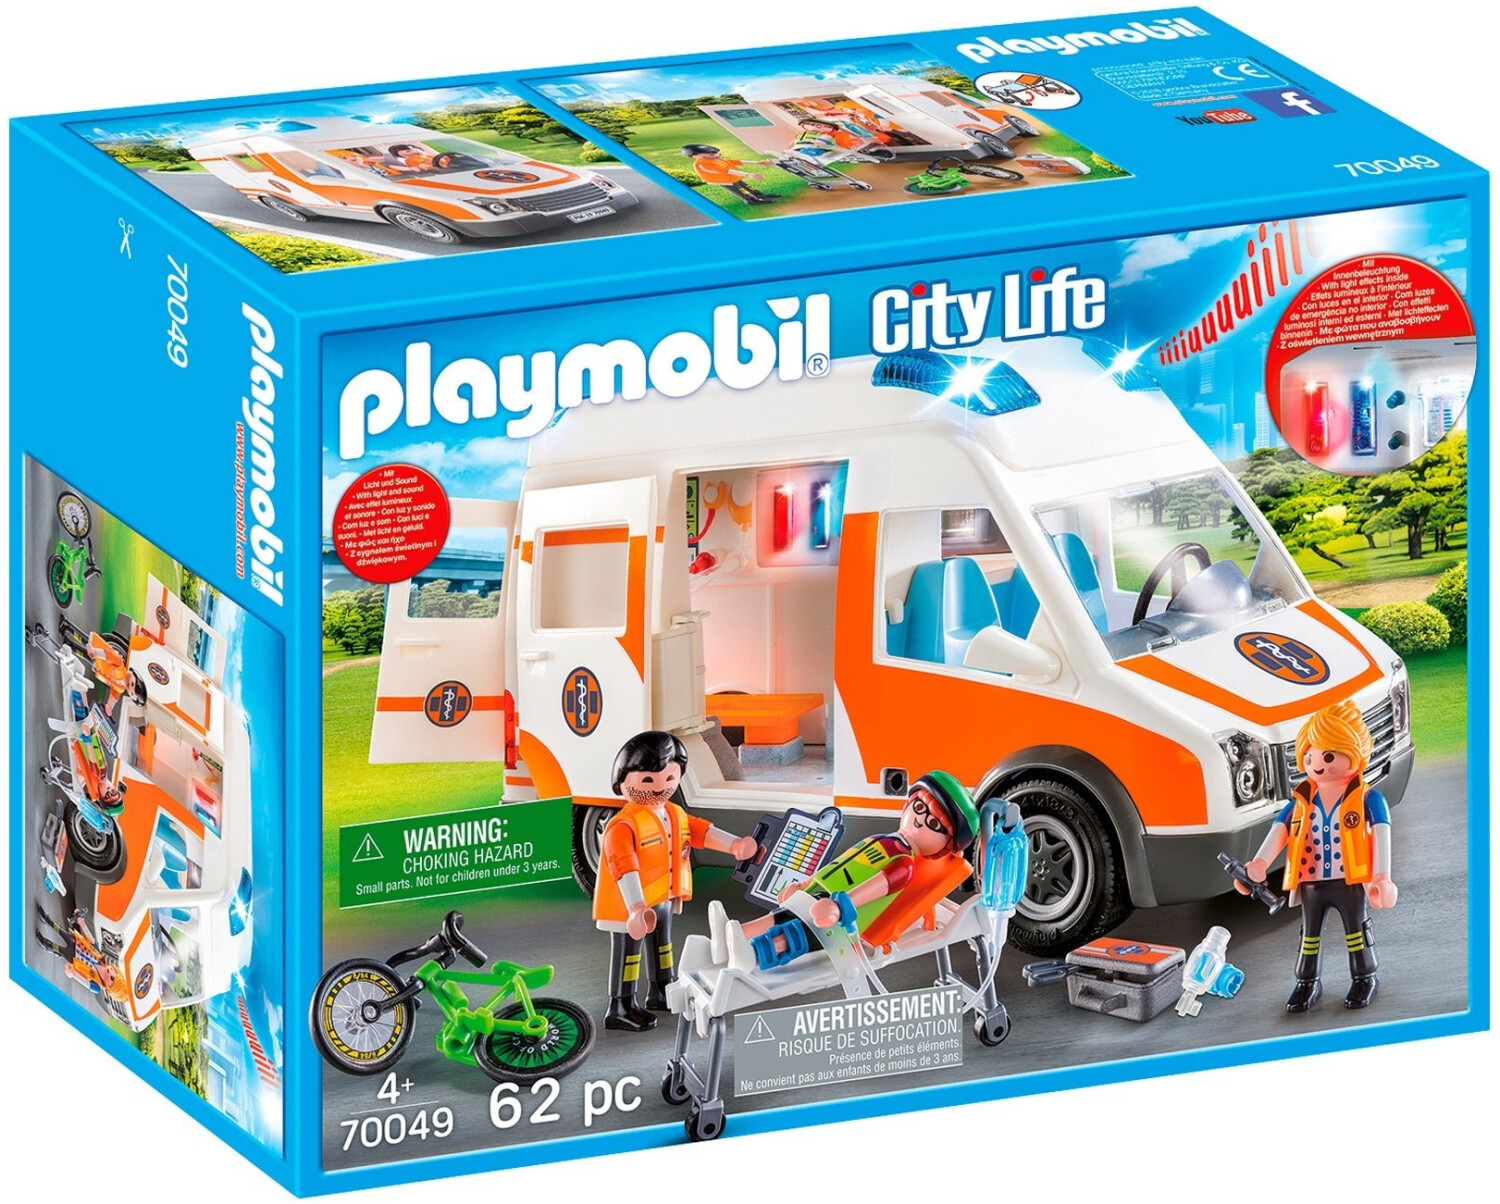 Playmobil Playmobil City Life - Playmobil City Life pour les 4 ans +!